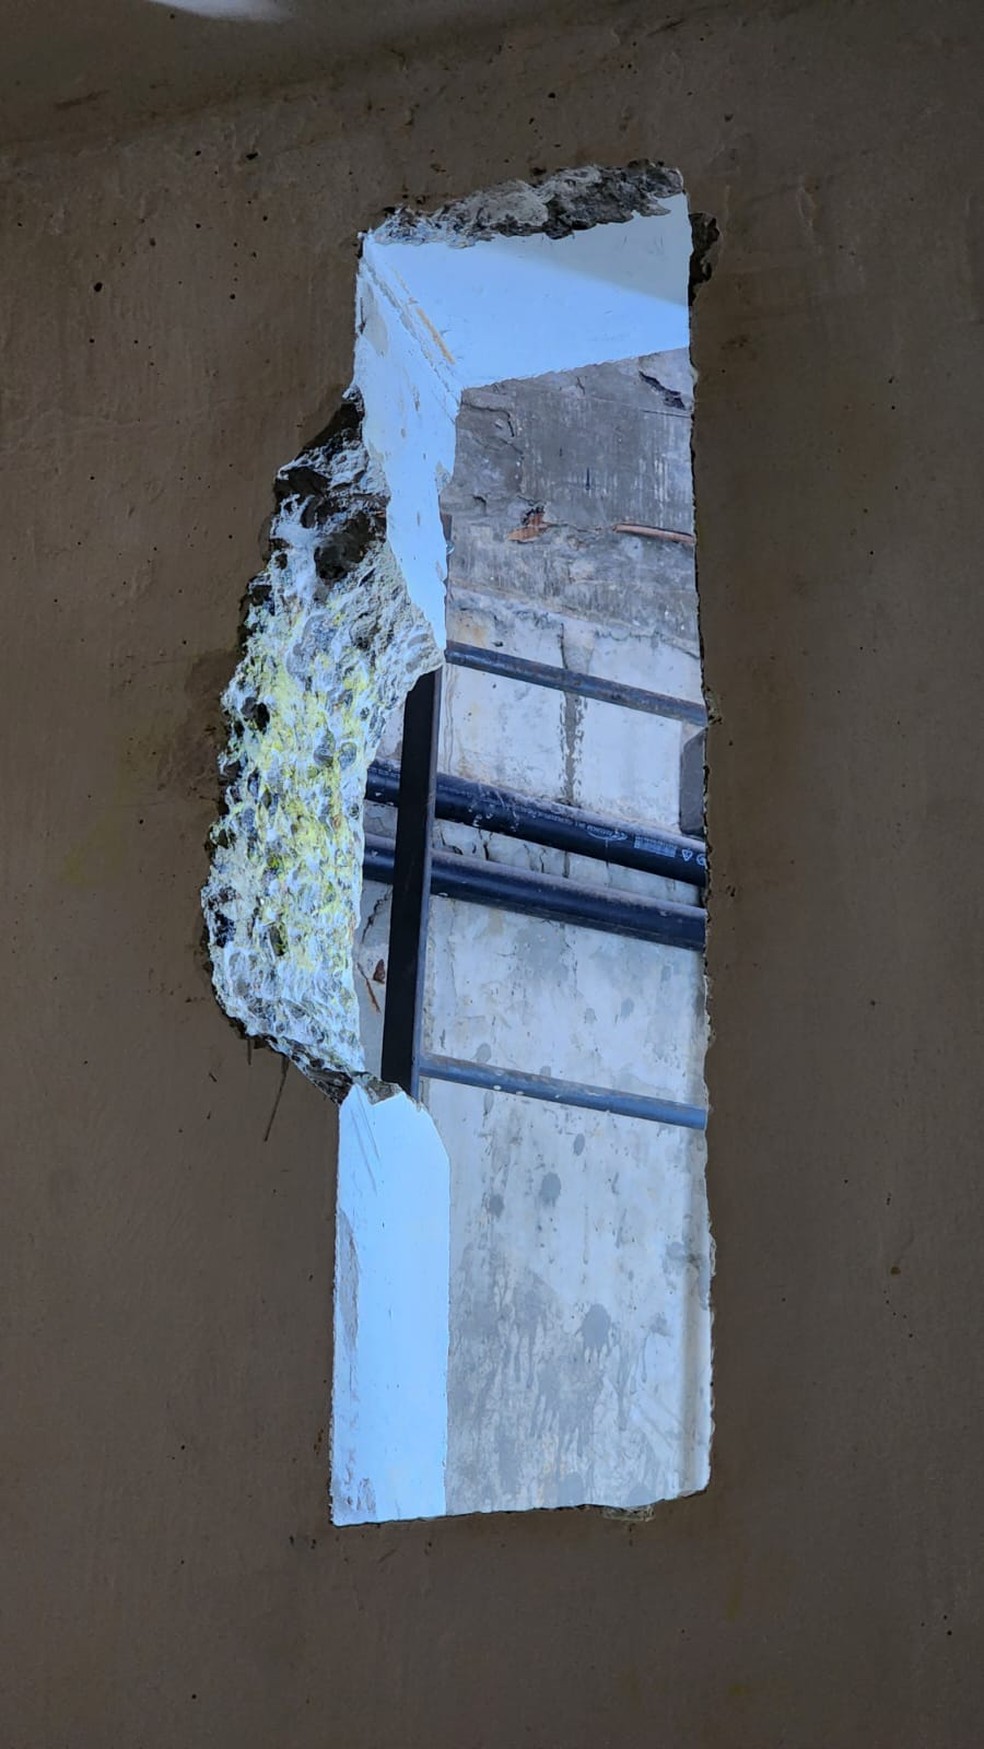 Buraco na parede da cela de onde saíram fugitivos do presídio de segurança máxima de Mossoró — Foto: Divulgação